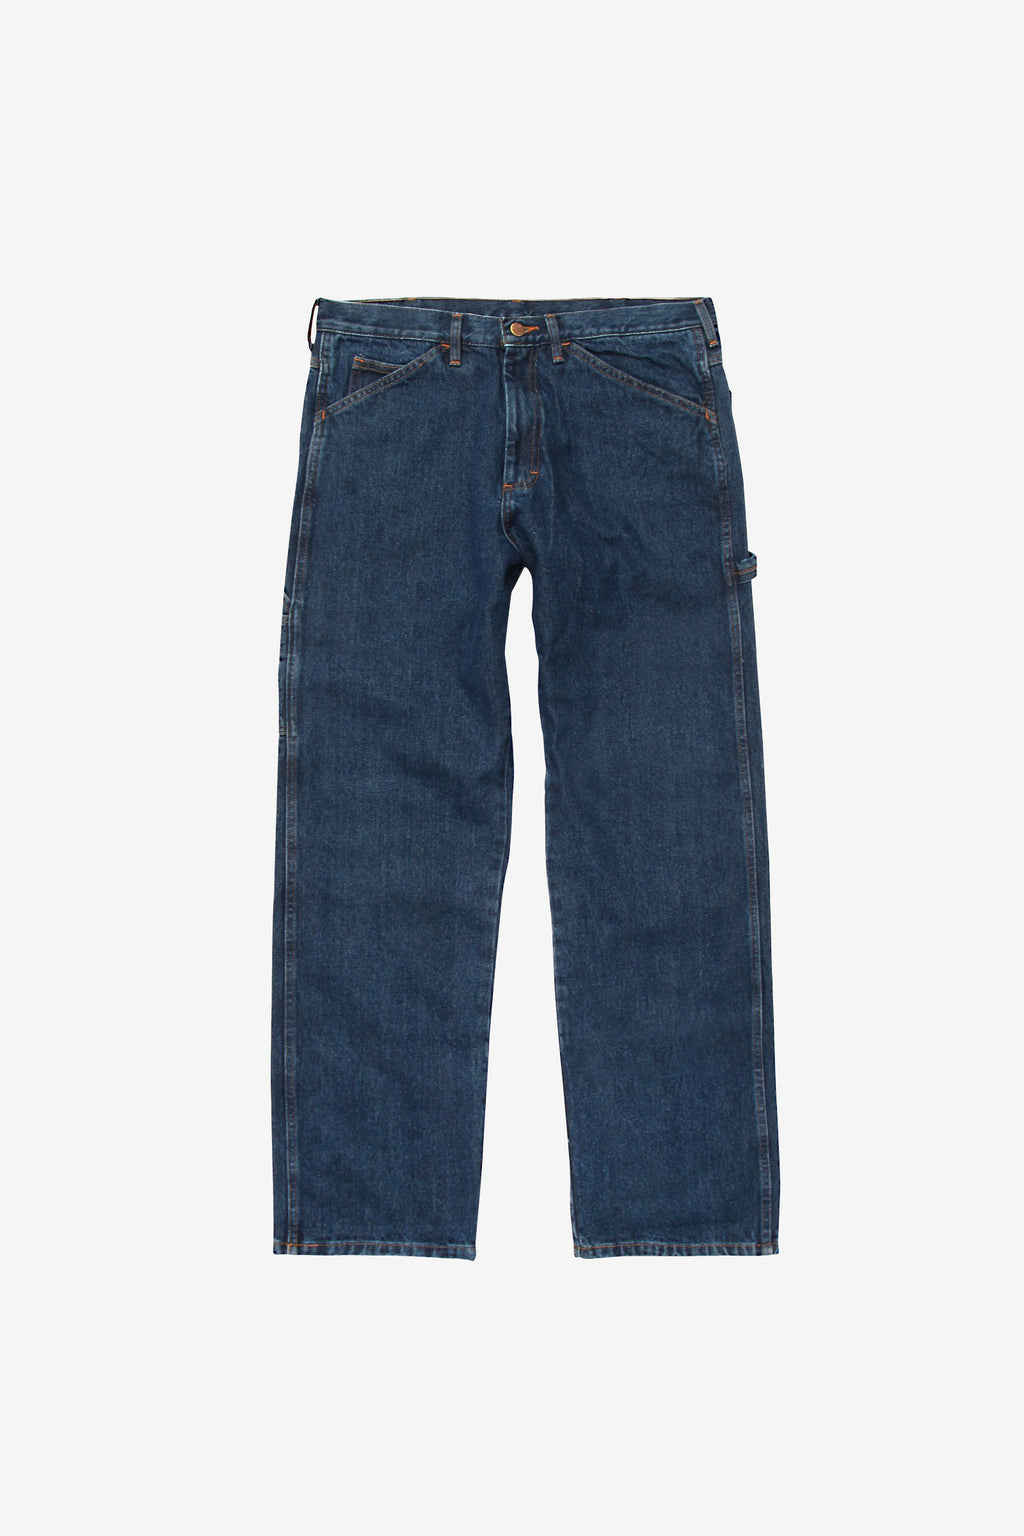 Round House 14oz Carpenter Jeans #1010 - Washed Indigo